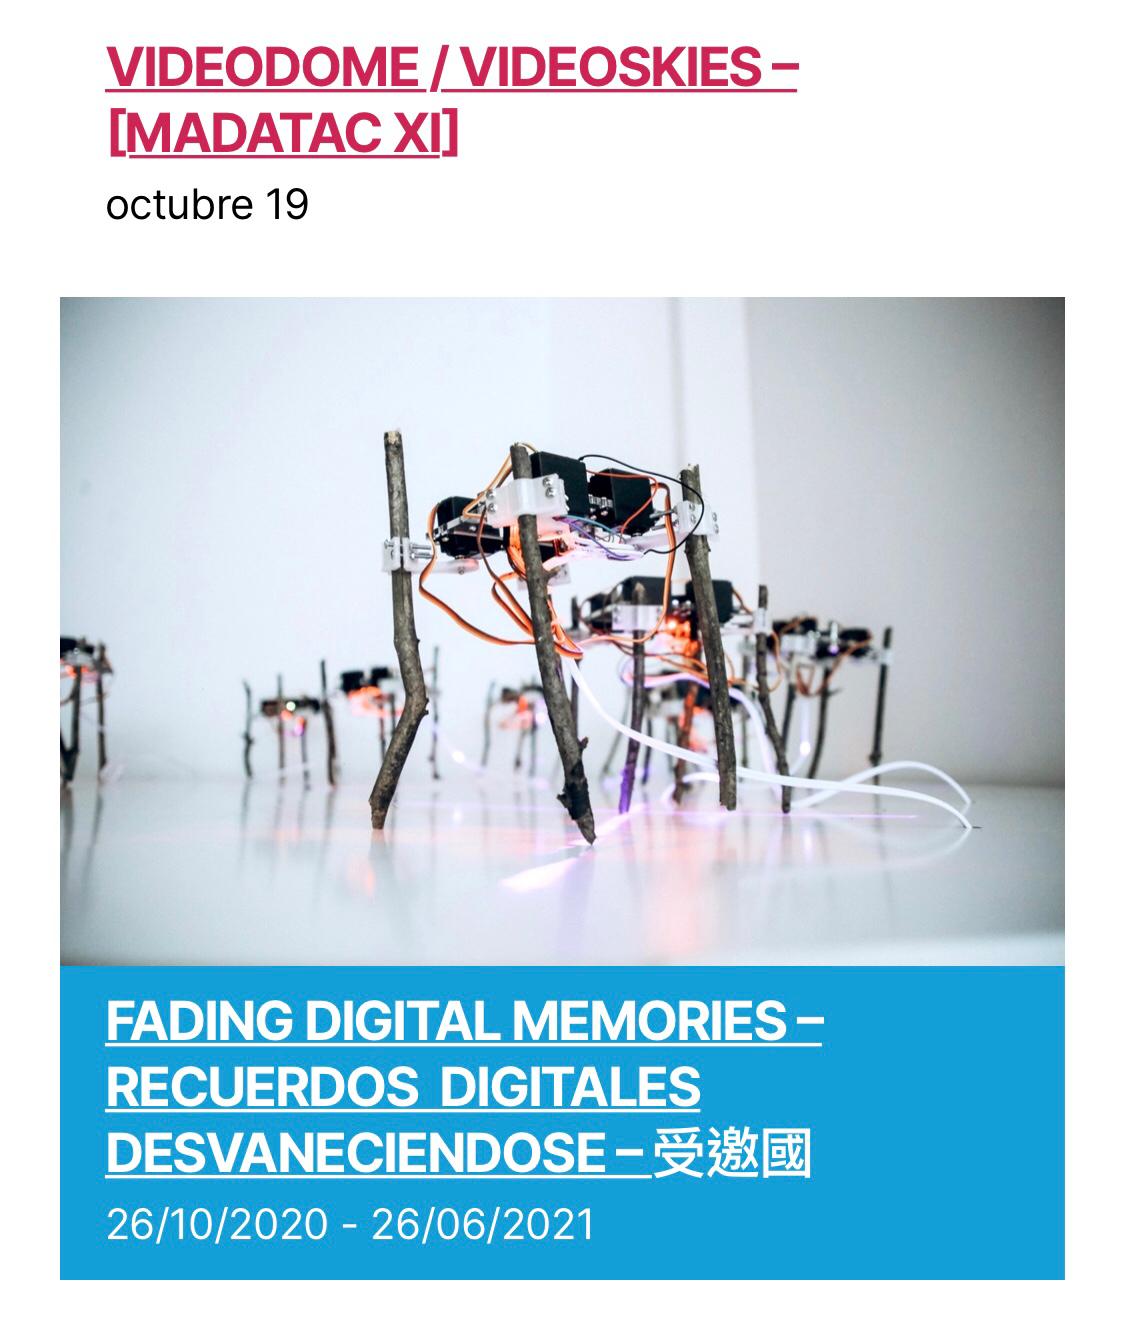 Taiwán, país invitado en la XI edición de MADATAC, presenta la exposición virtual 'Recuerdos Digitales Desvanecidos'